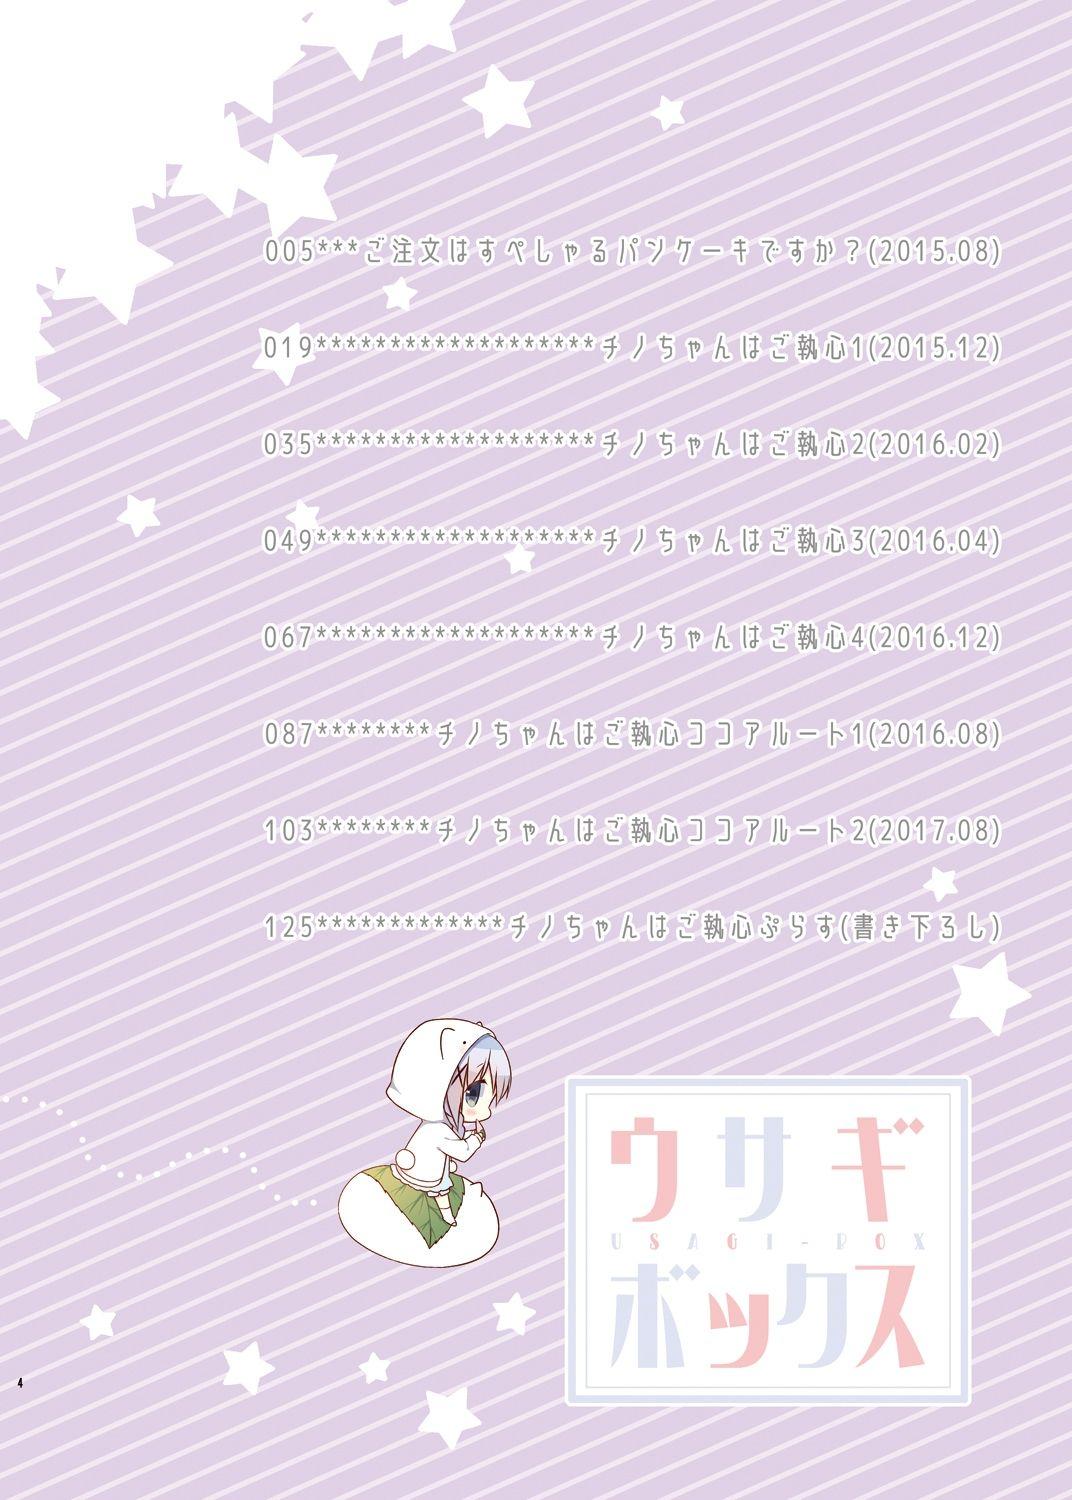 Les Usagi Box - Gochuumon wa usagi desu ka Cheerleader - Page 4